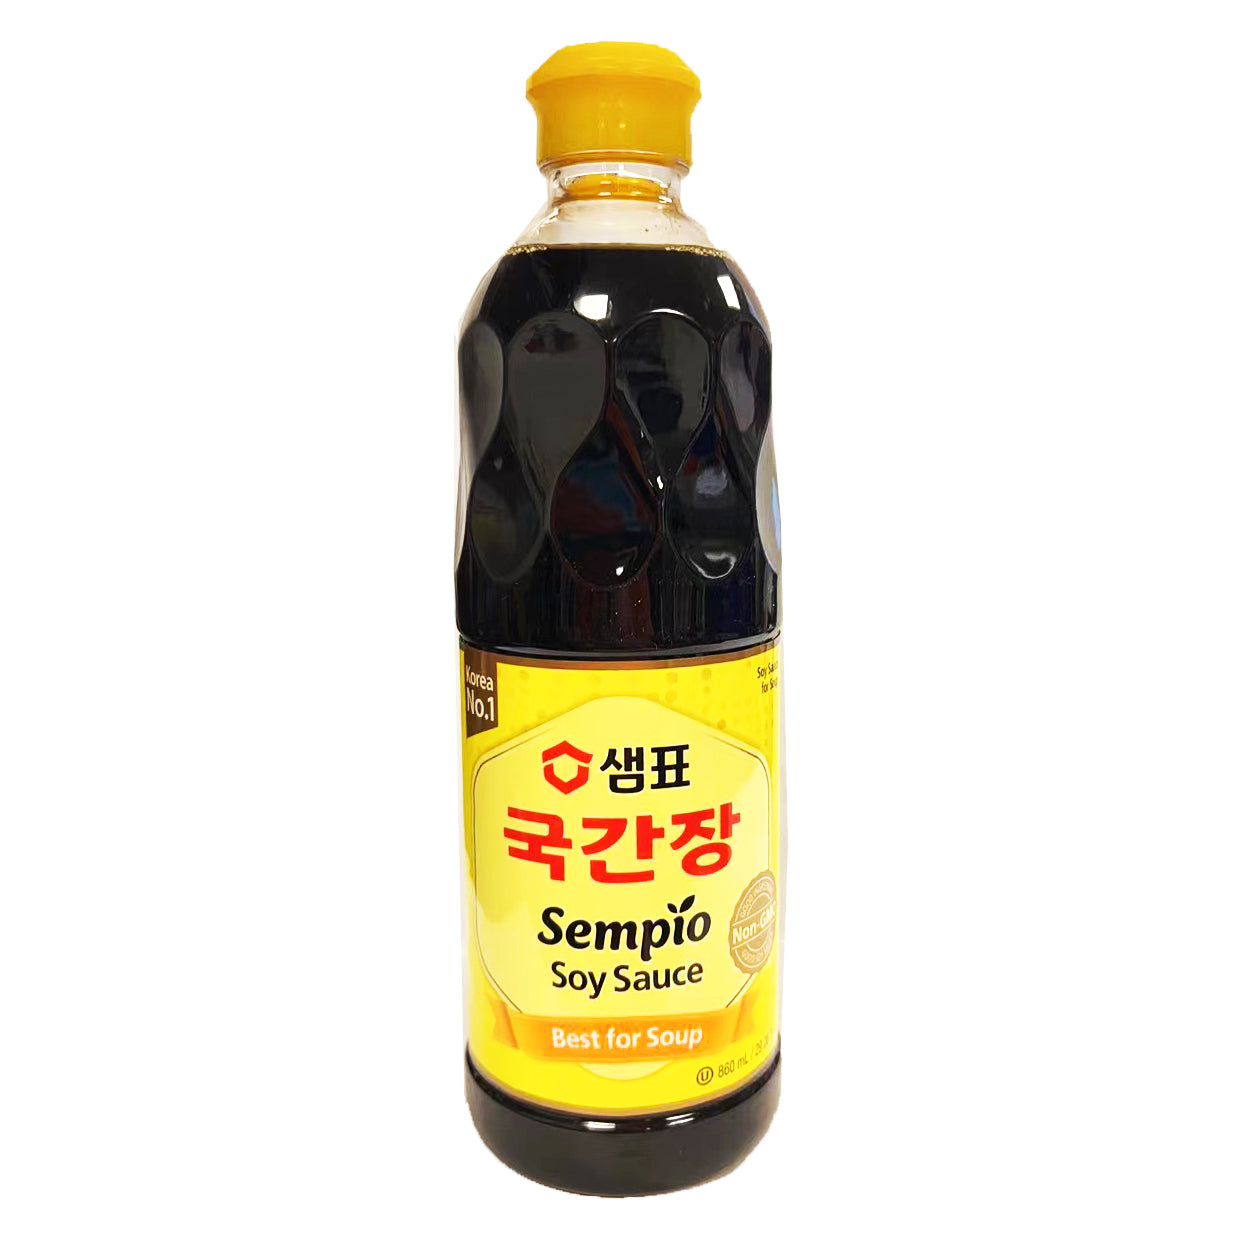 Sempio Soy Sauce For Soup 860ml ~ Sempio 韩式汤专用酱油 860ml